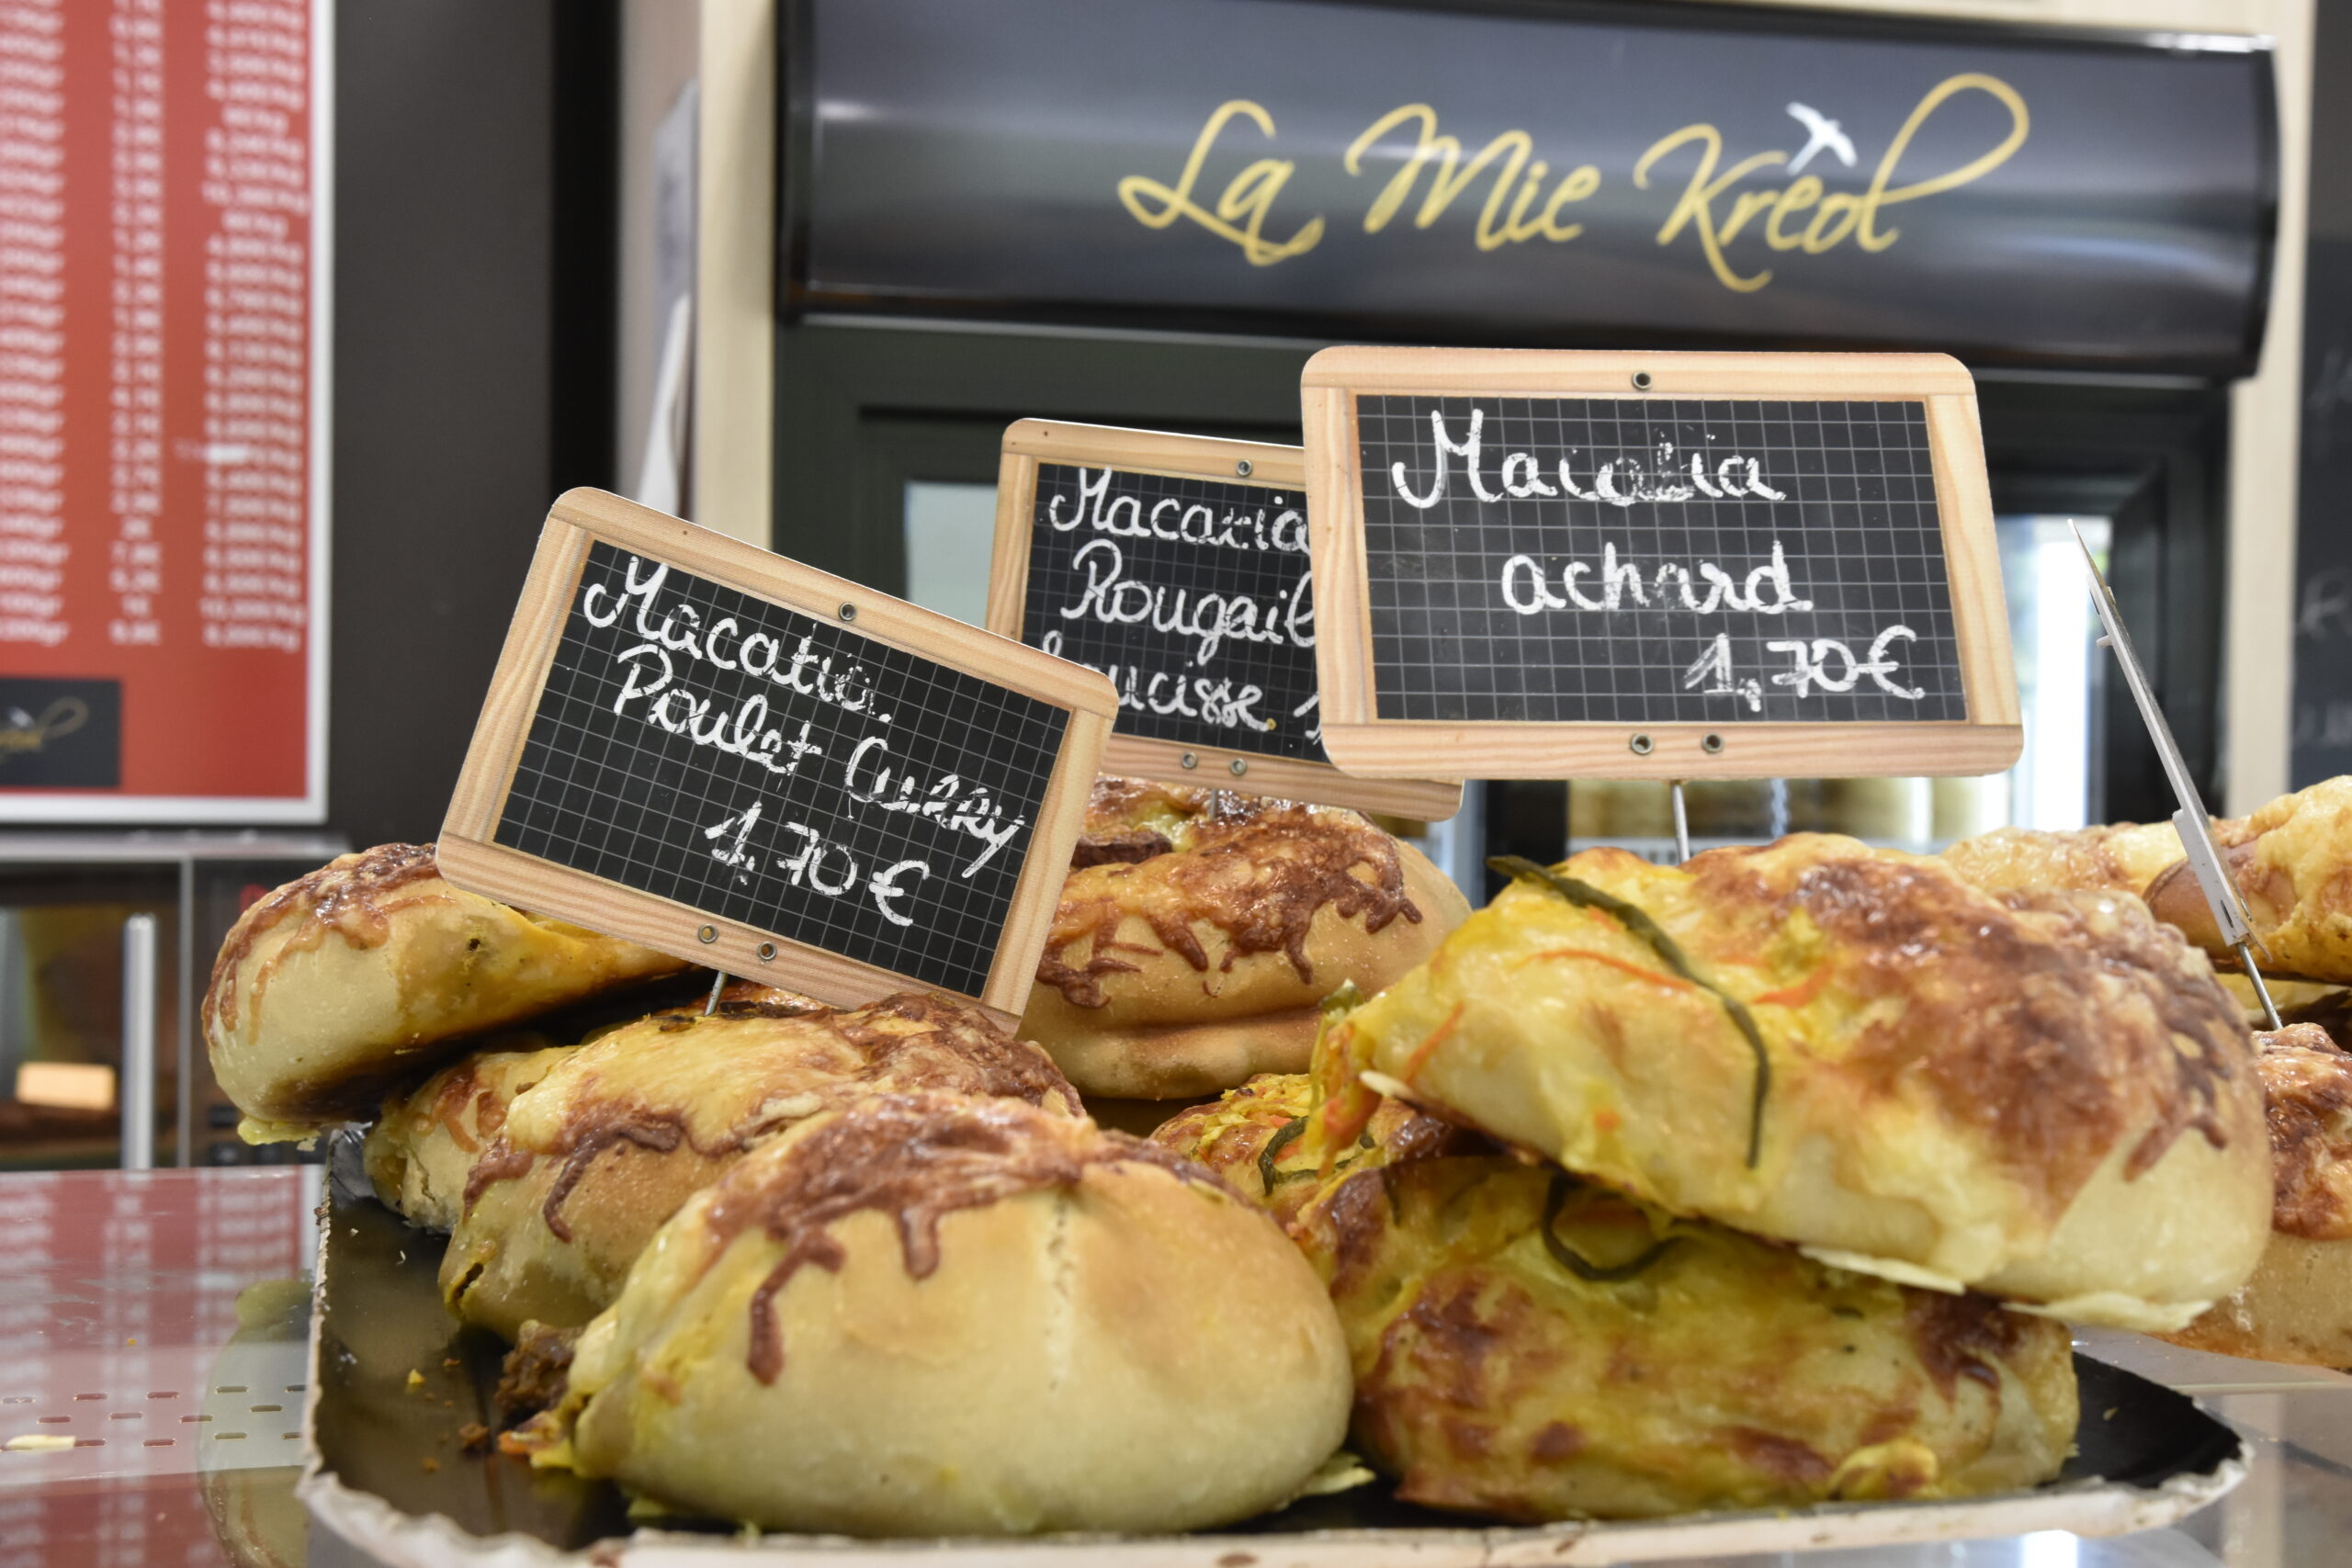 Rencontres Gourmandes #4: Macatia Bouchons et Rougail Saucisse à La Mie Kréol